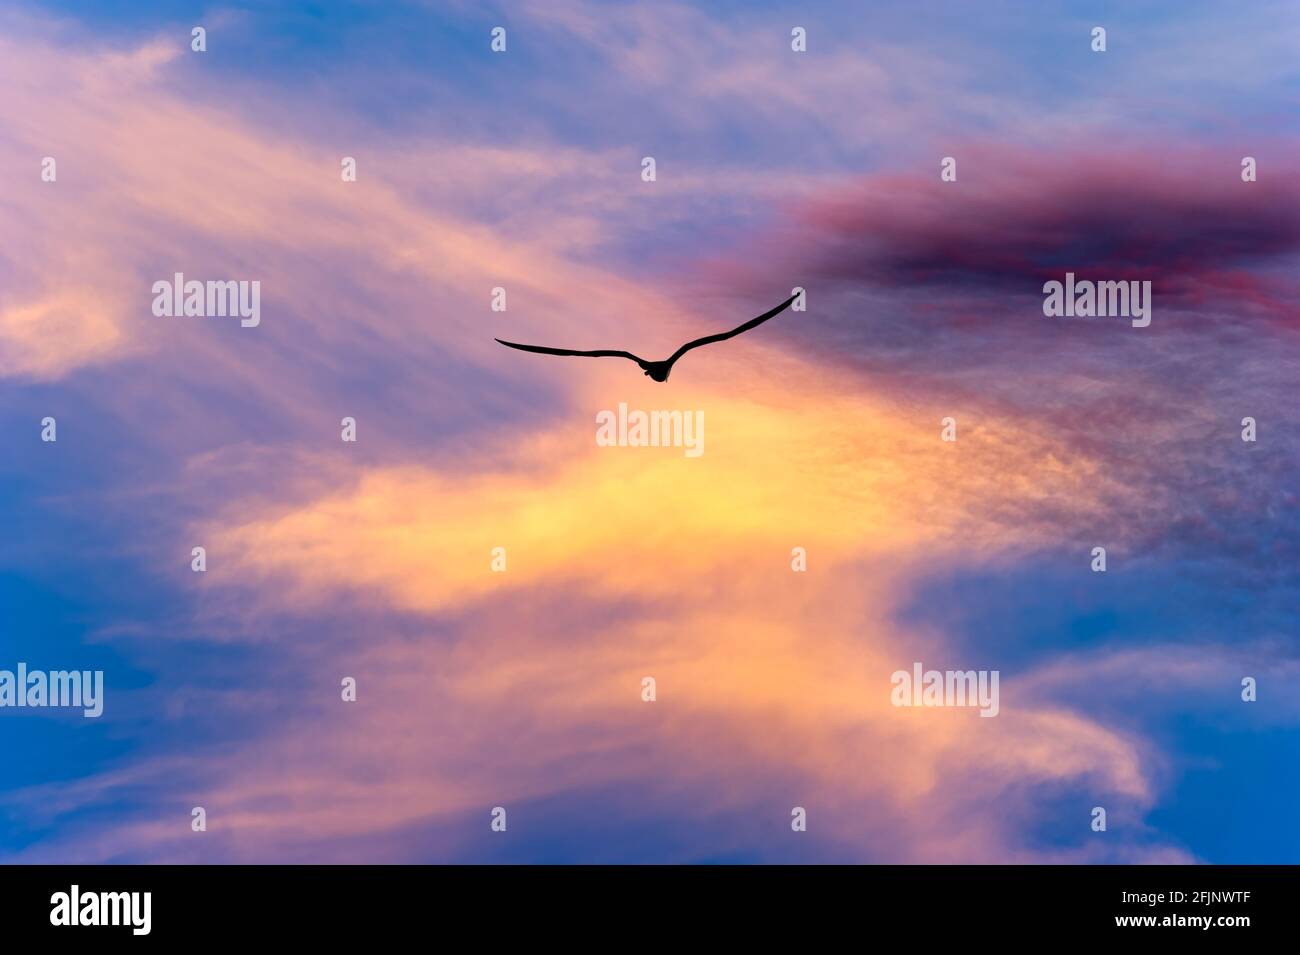 Ein einziger Vogel fliegt mit Flügeln, die sich in Silhouetten ausbreiten Ein lebendiger, farbenfroher Sonnenuntergang am Himmel Stockfoto